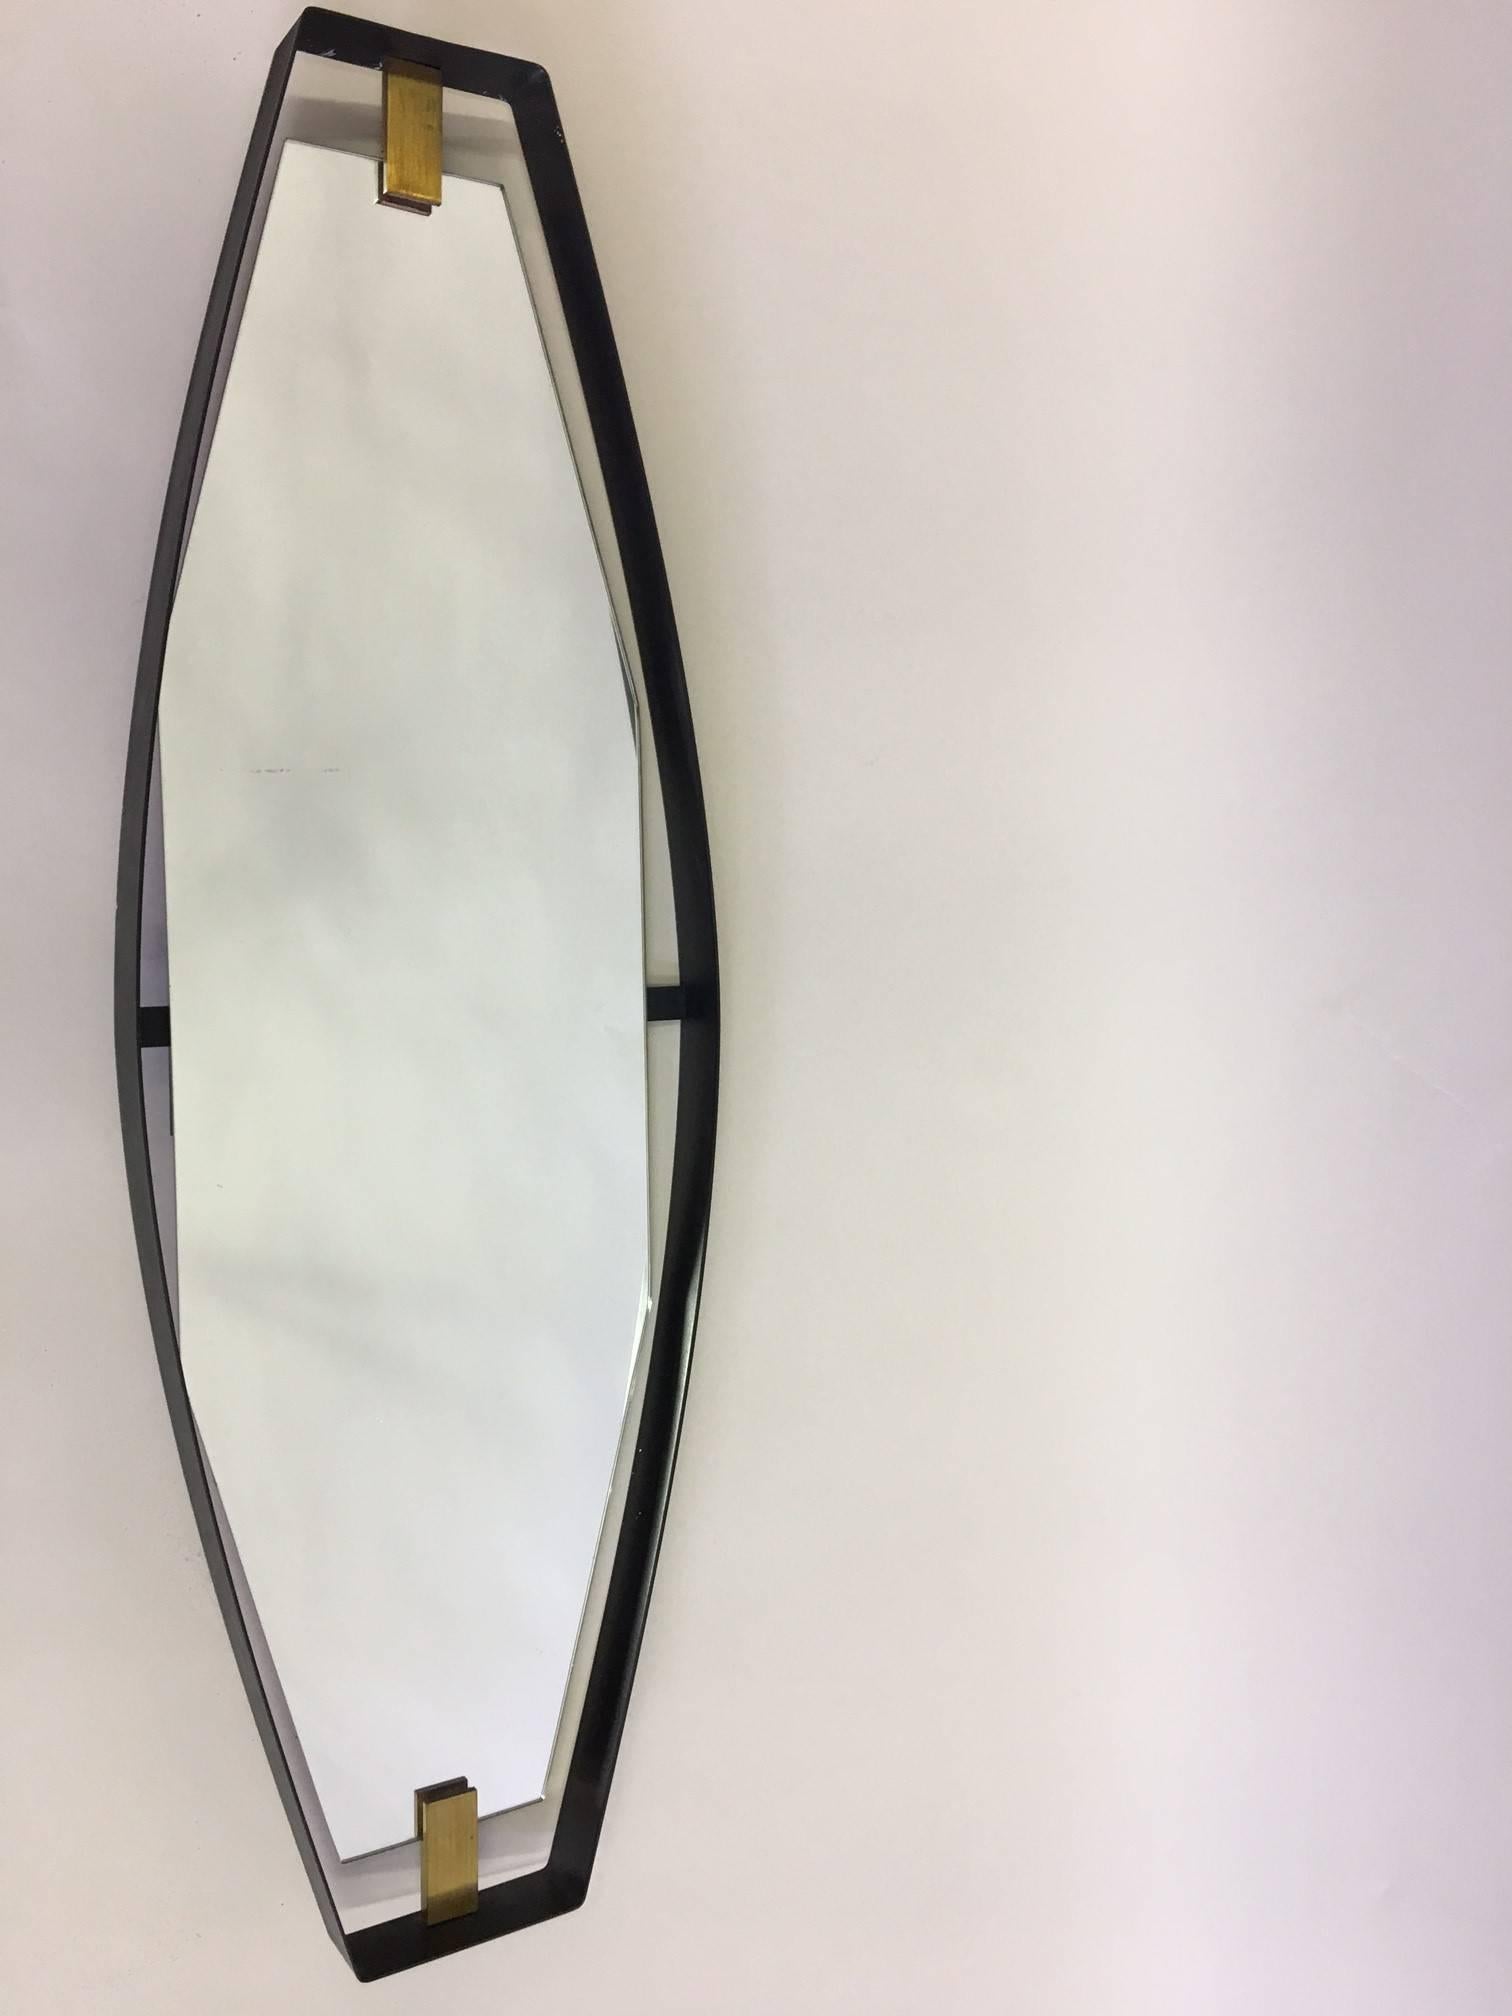 Important miroir italien, de style moderne du milieu du siècle, d'une rare forme sculpturale inclinée, attribué à Max Ingrand pour Fontana Arte, 1950. 

Le cadre du miroir est constitué d'une bande de métal émaillé noir fabriquée dans une forme